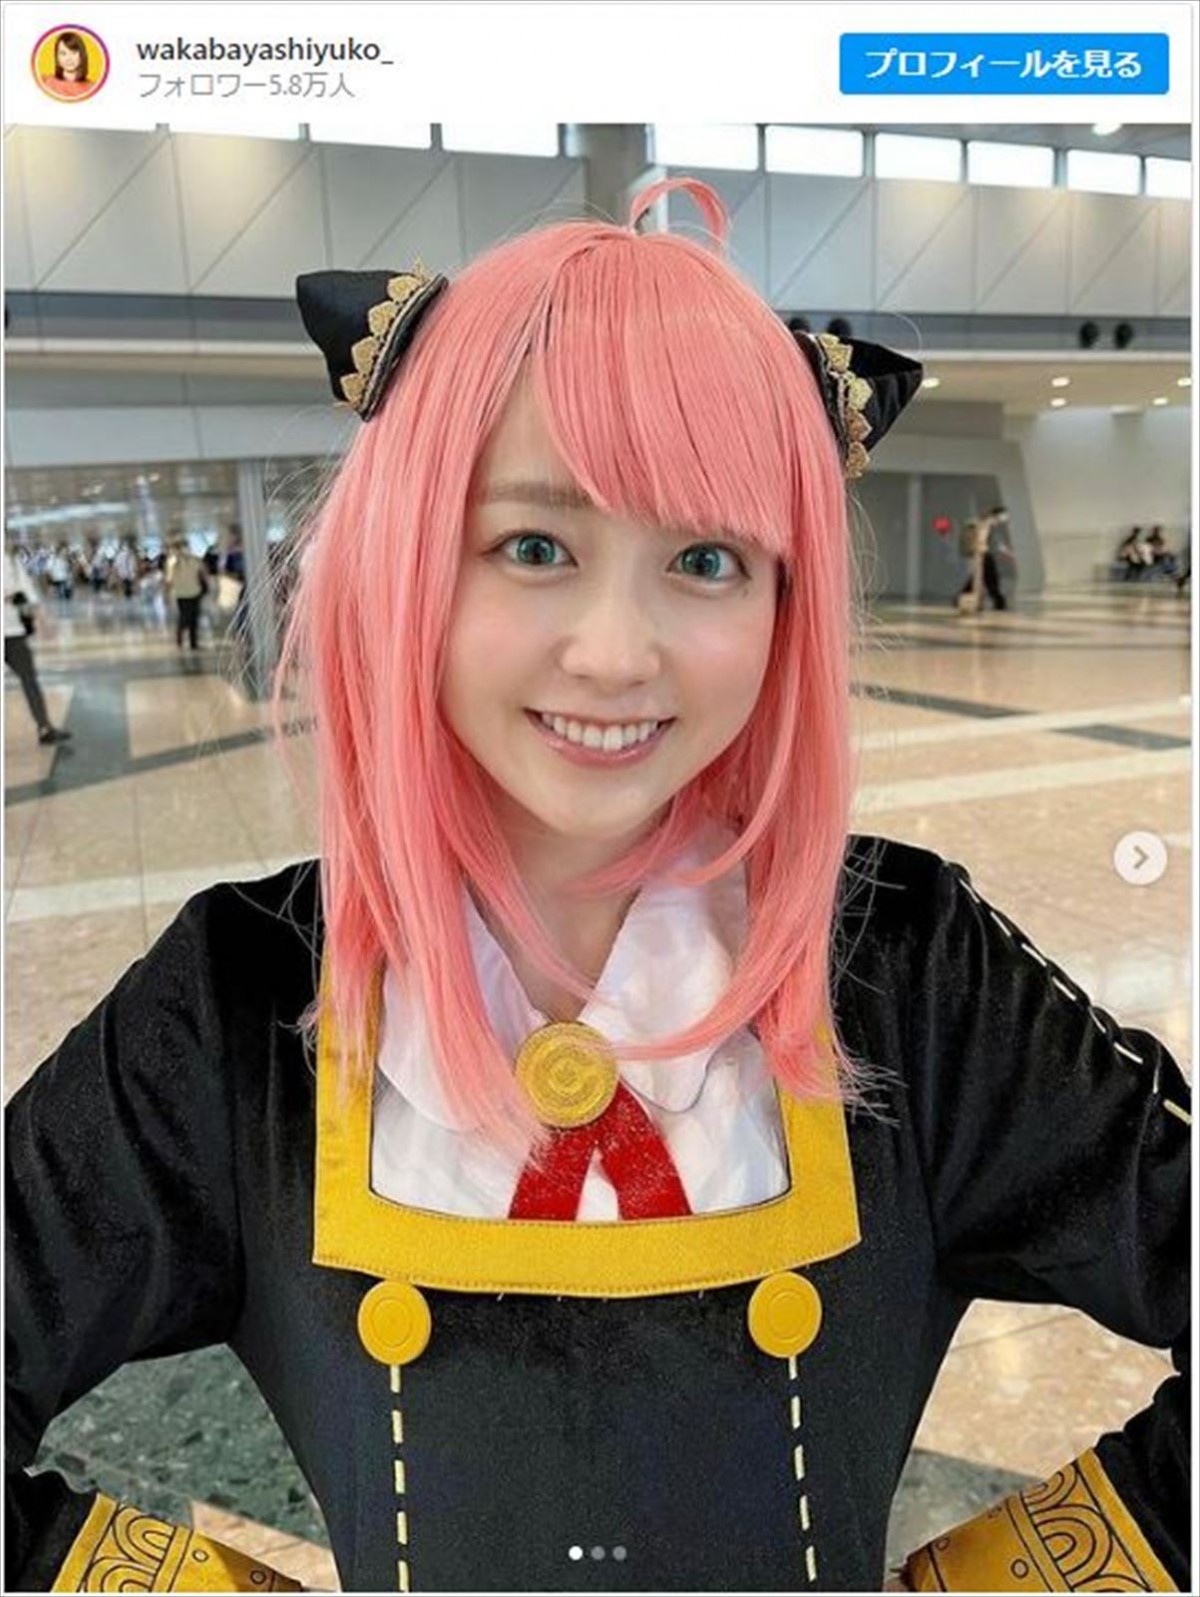 若林有子アナ、人生初コスプレでピンク髪×緑アイの“アーニャ”に「100点満点です」